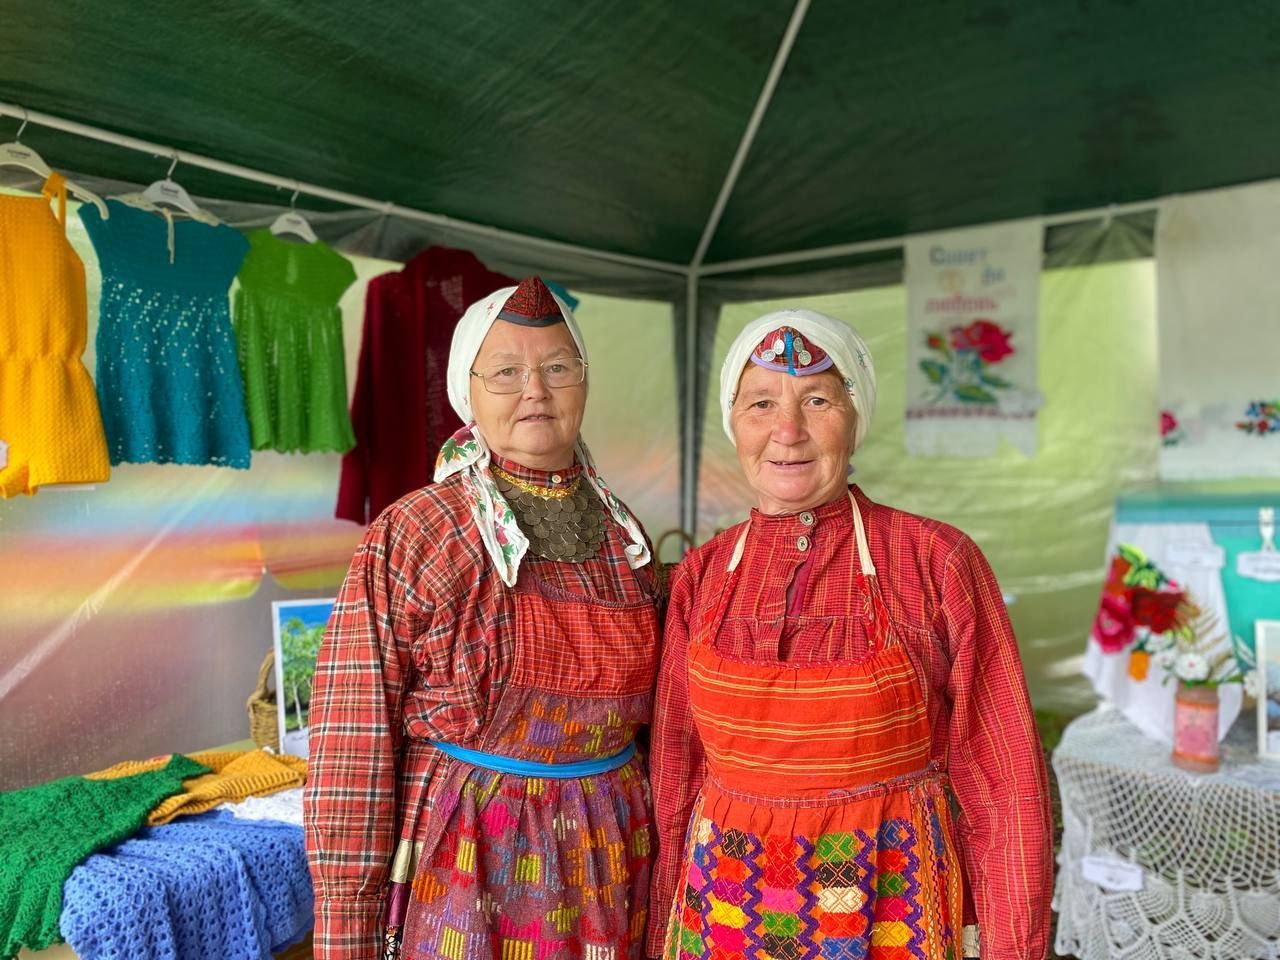 Рустам Минниханов написал о празднике "Семык" в Агрызском районе